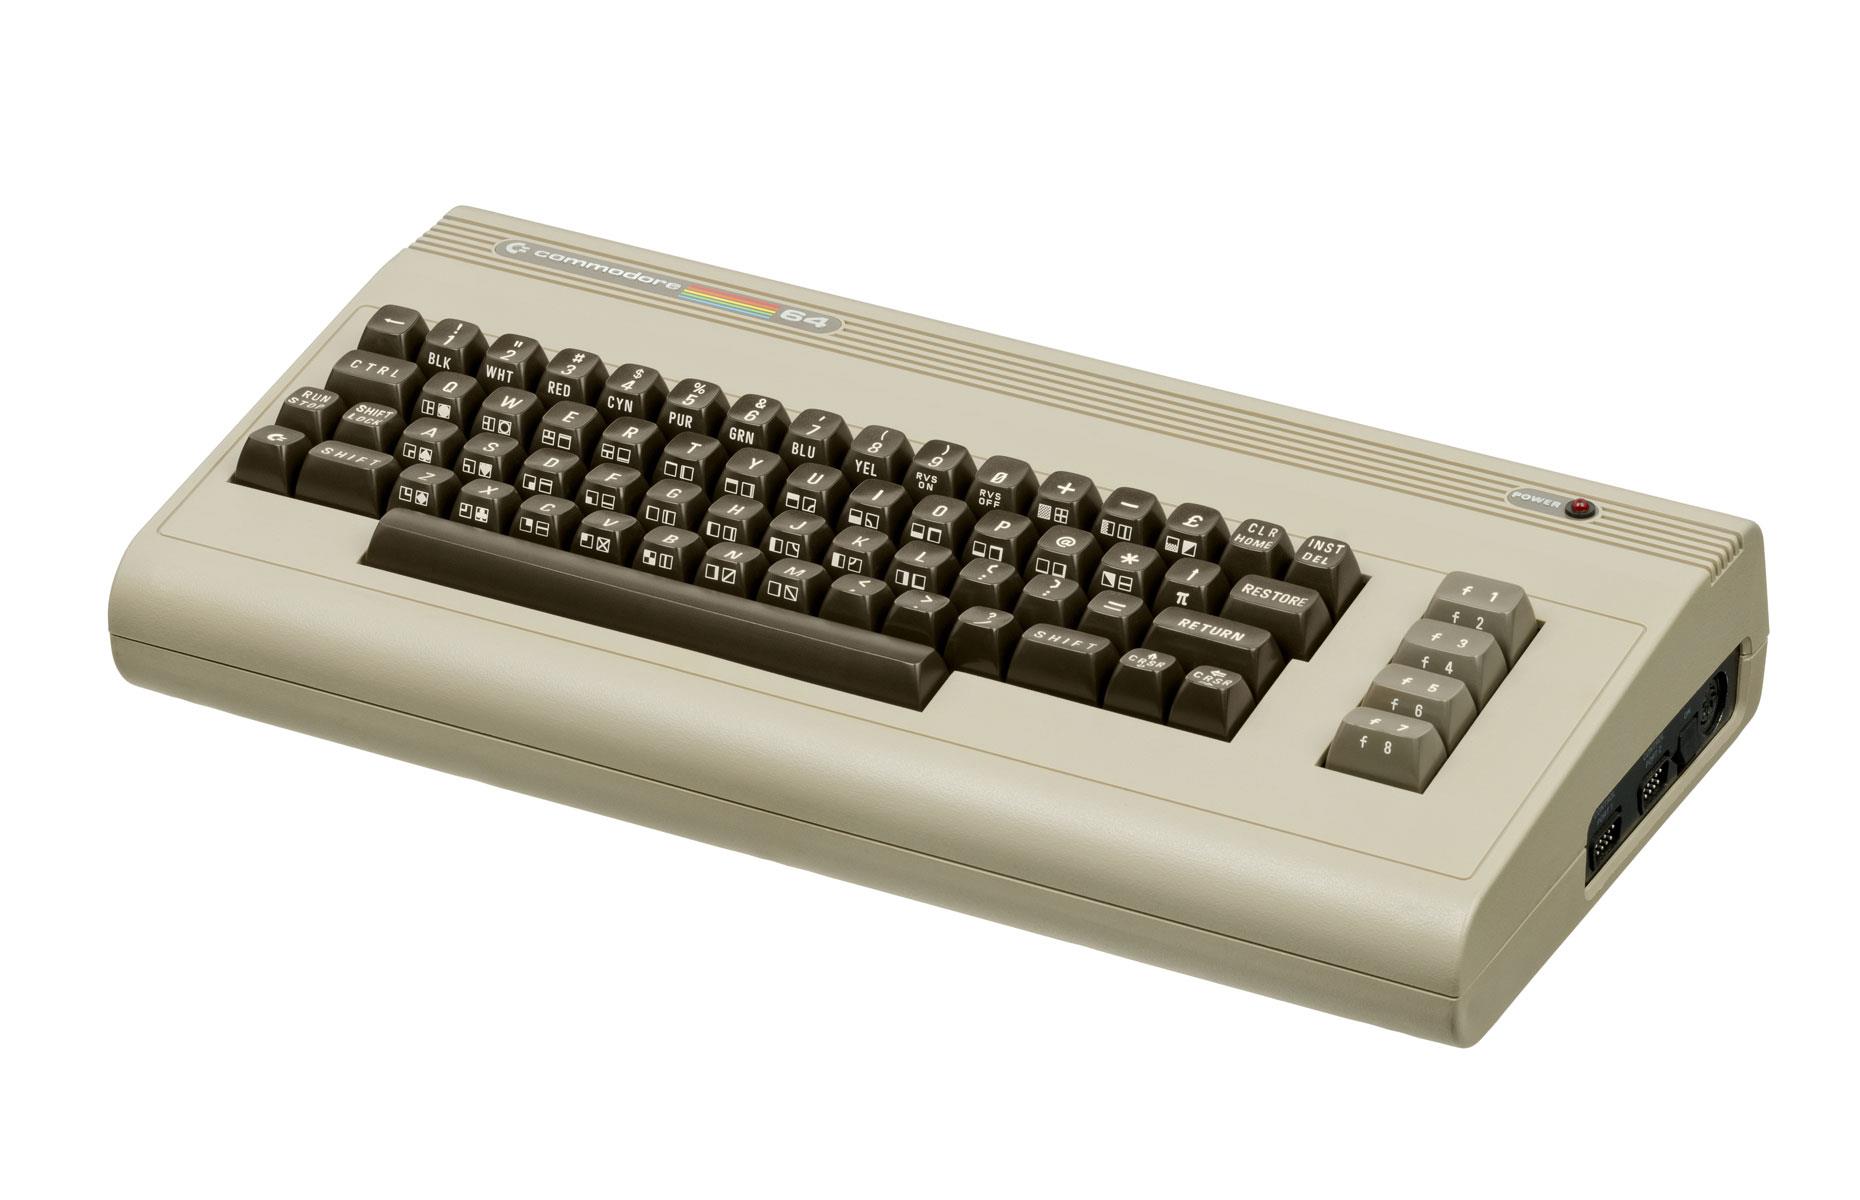 1980s: Commodore 64